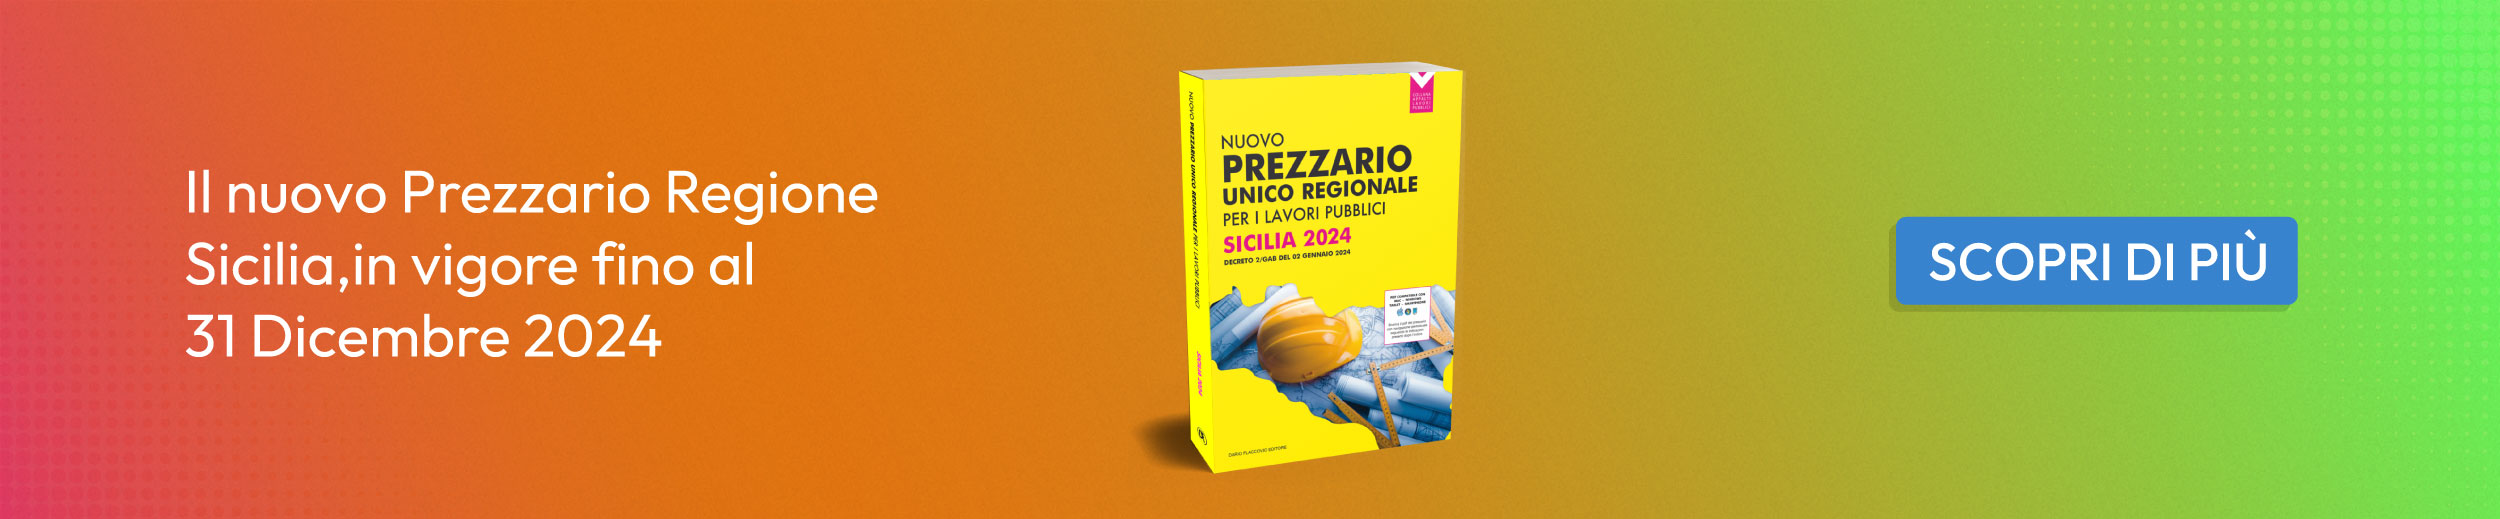 Prezzario unico regionale per i lavori pubblici Sicilia 2024